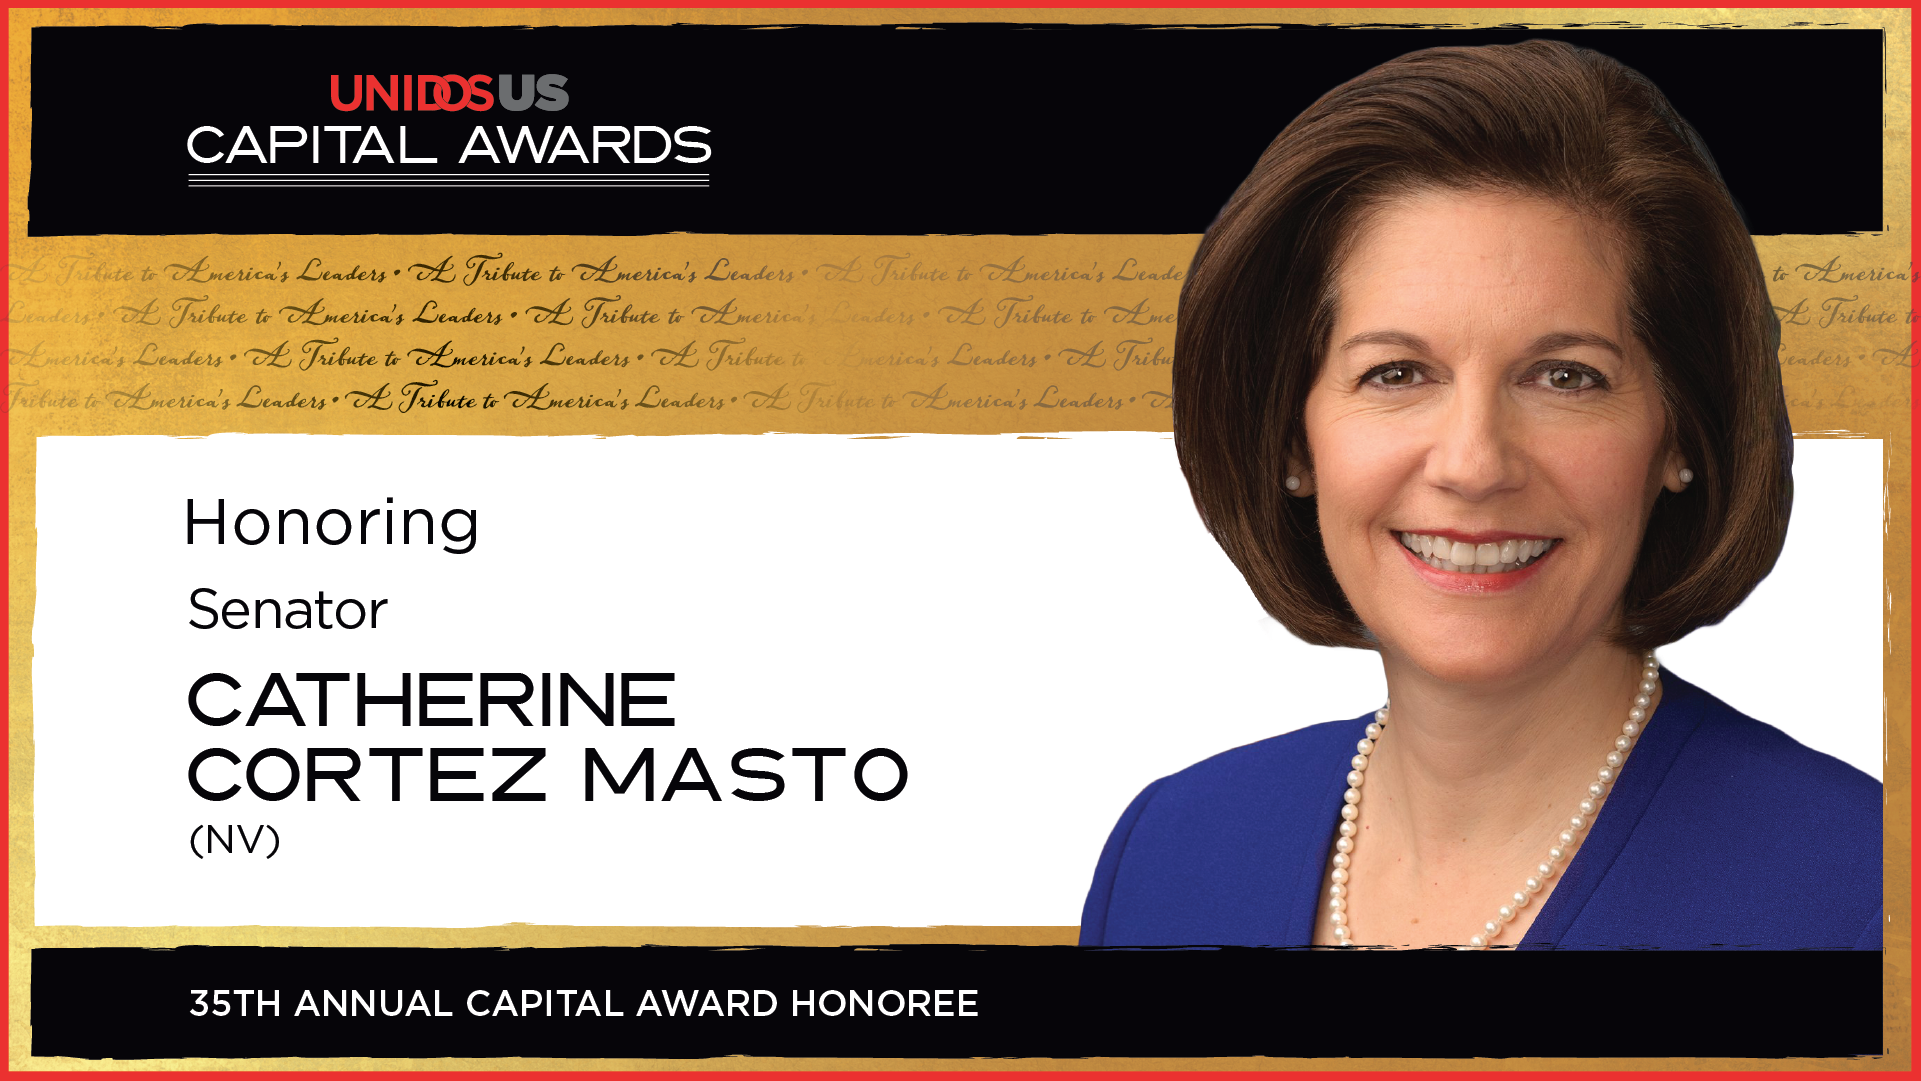 Senator Catherine Cortez Masto